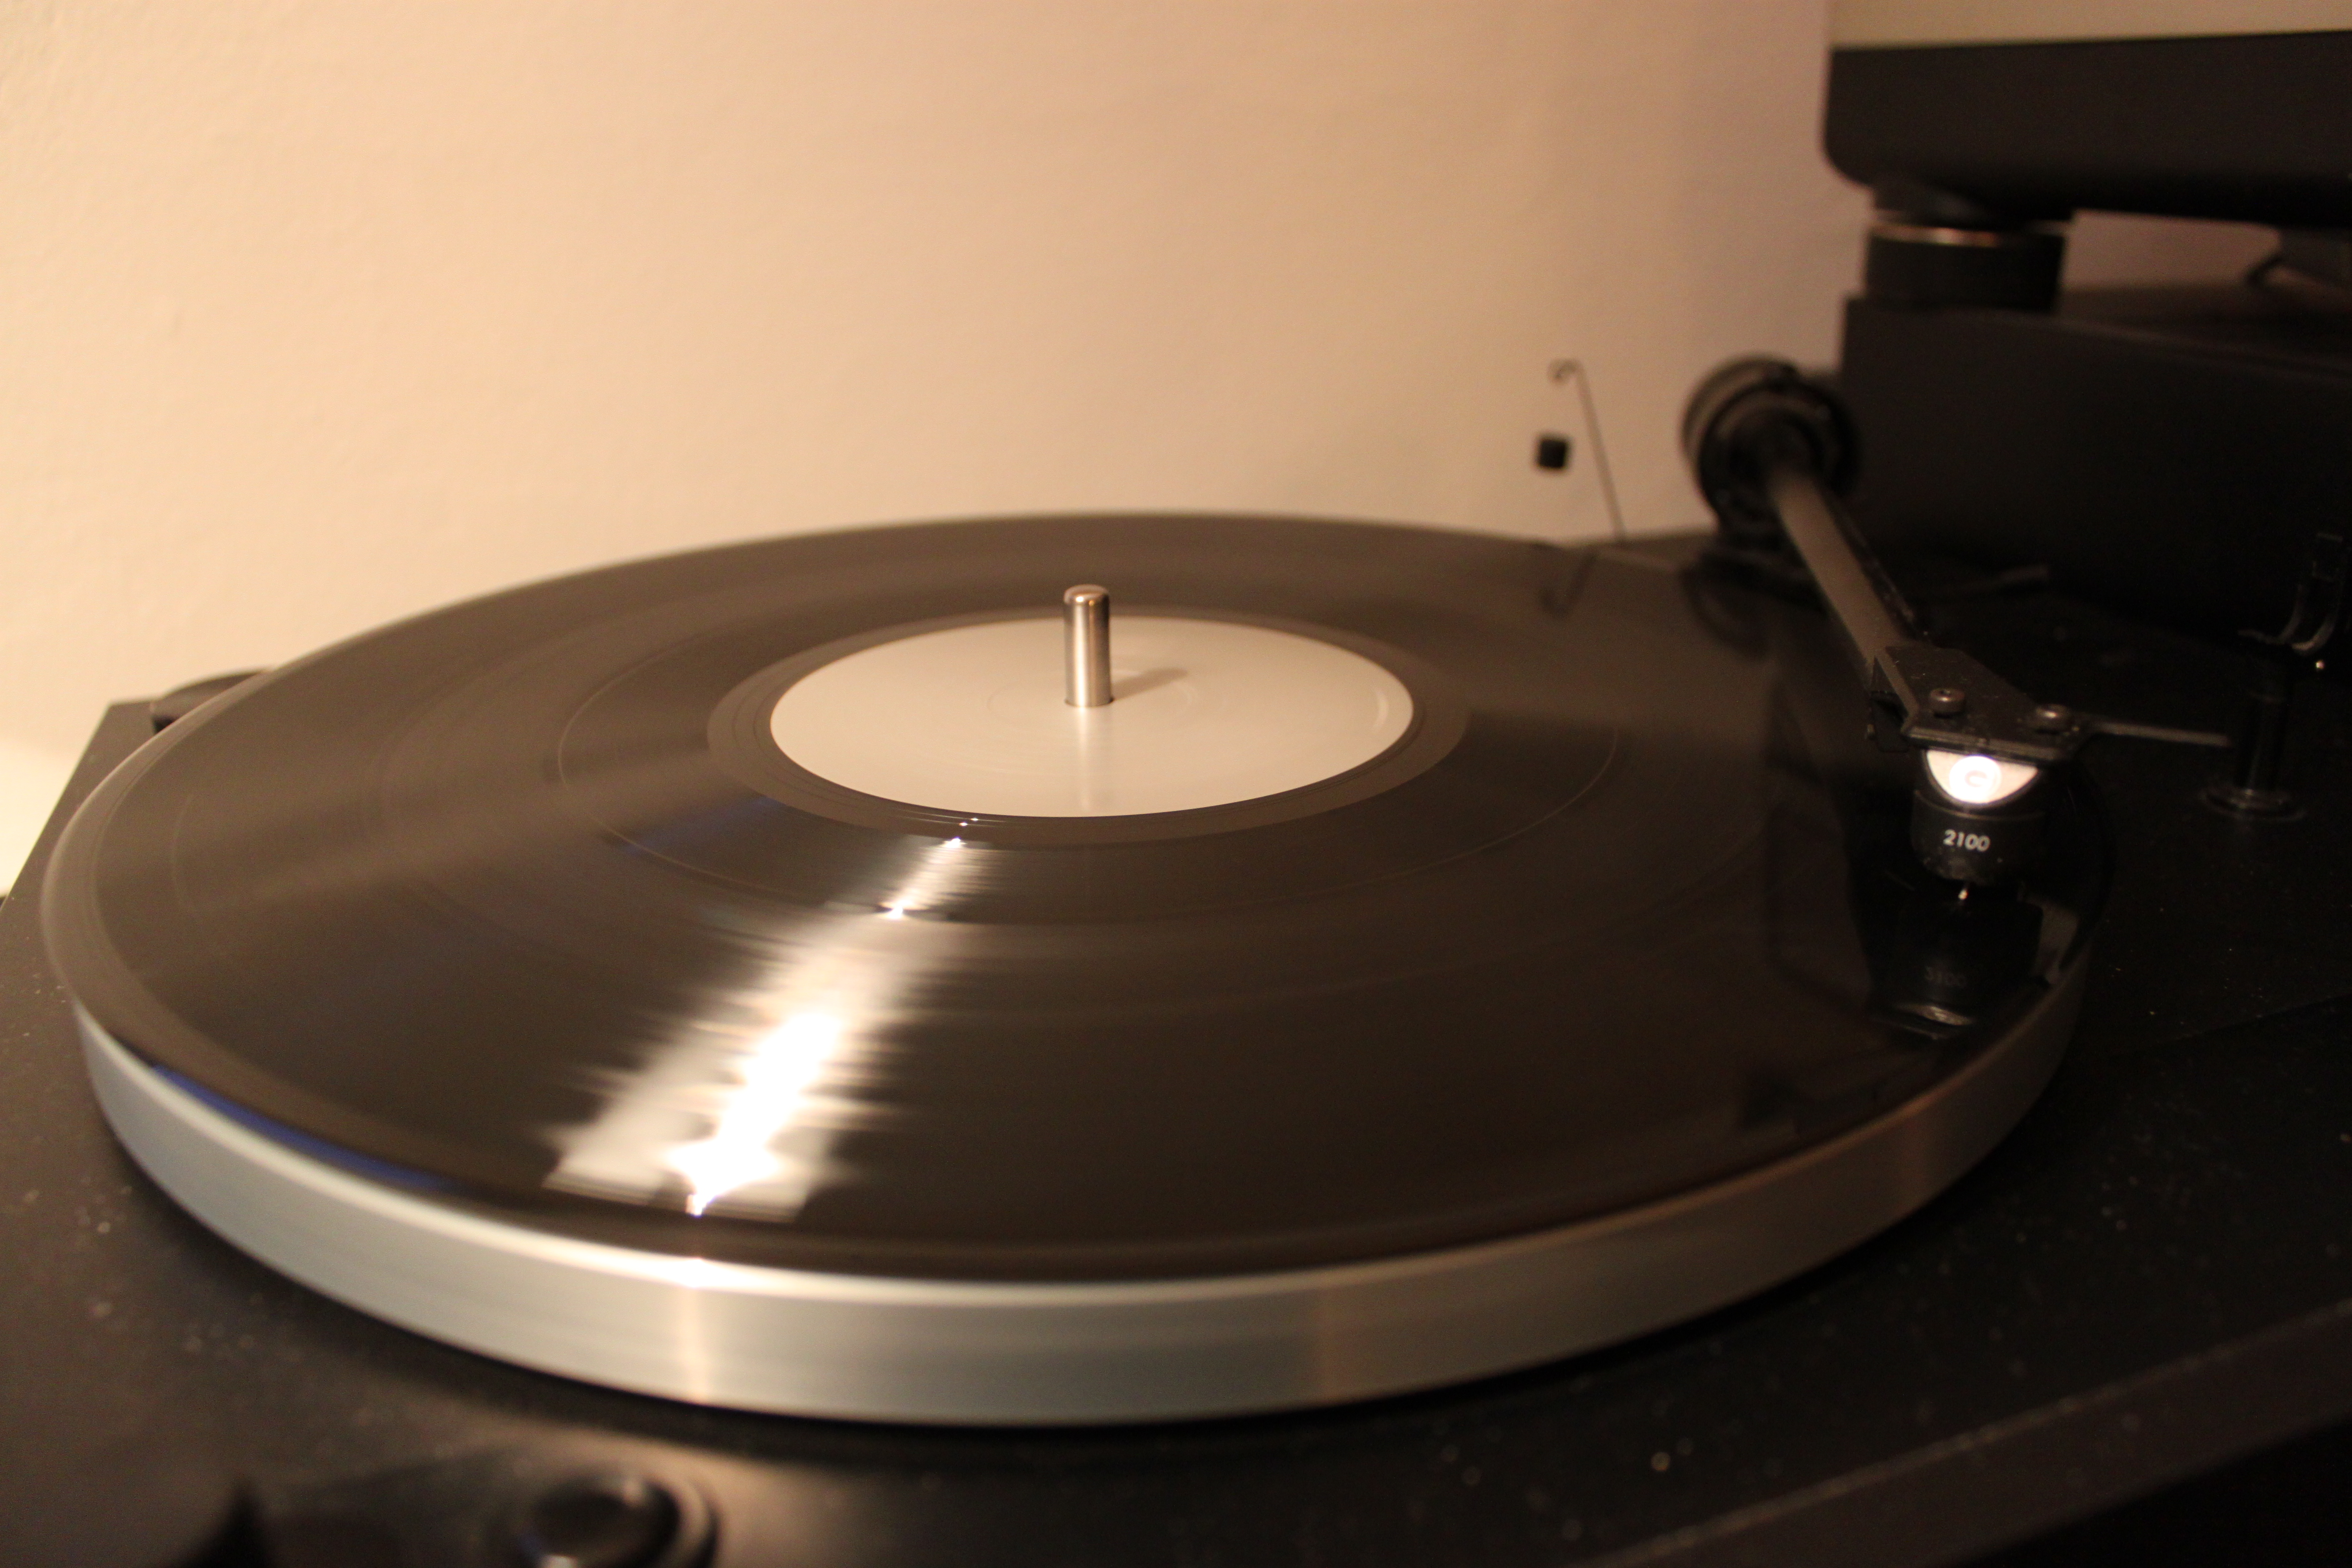 Thorens TD 290 MK2 spielt Sigur Rós Inni Vinyl